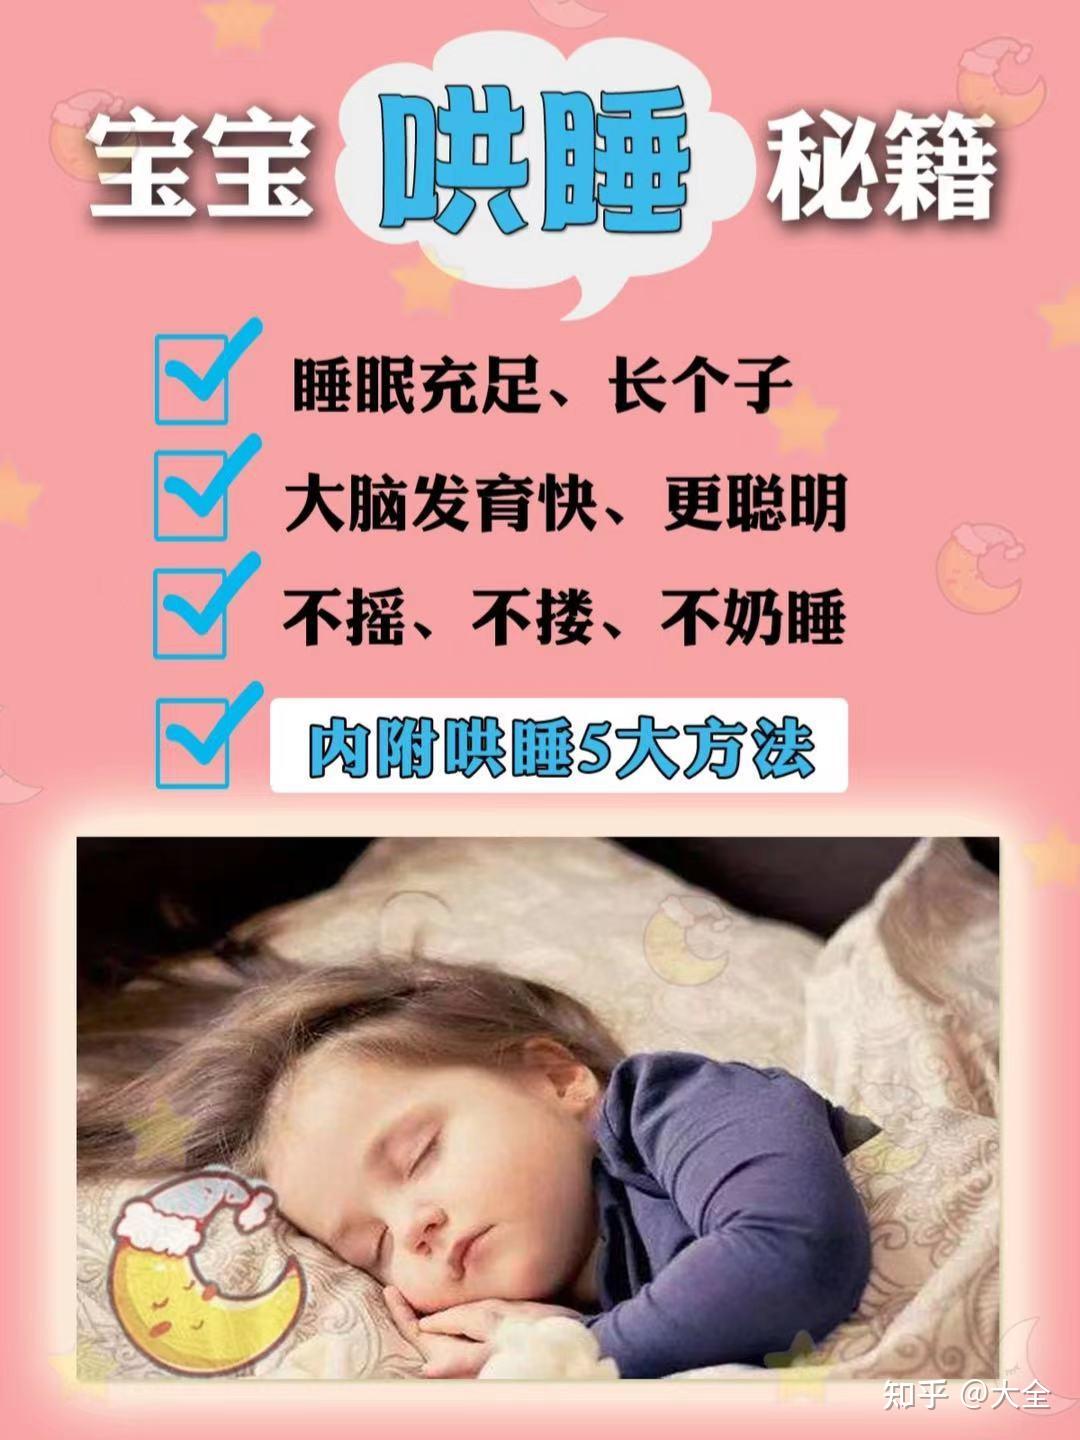 年轻父母哄宝宝睡觉-蓝牛仔影像-中国原创广告影像素材